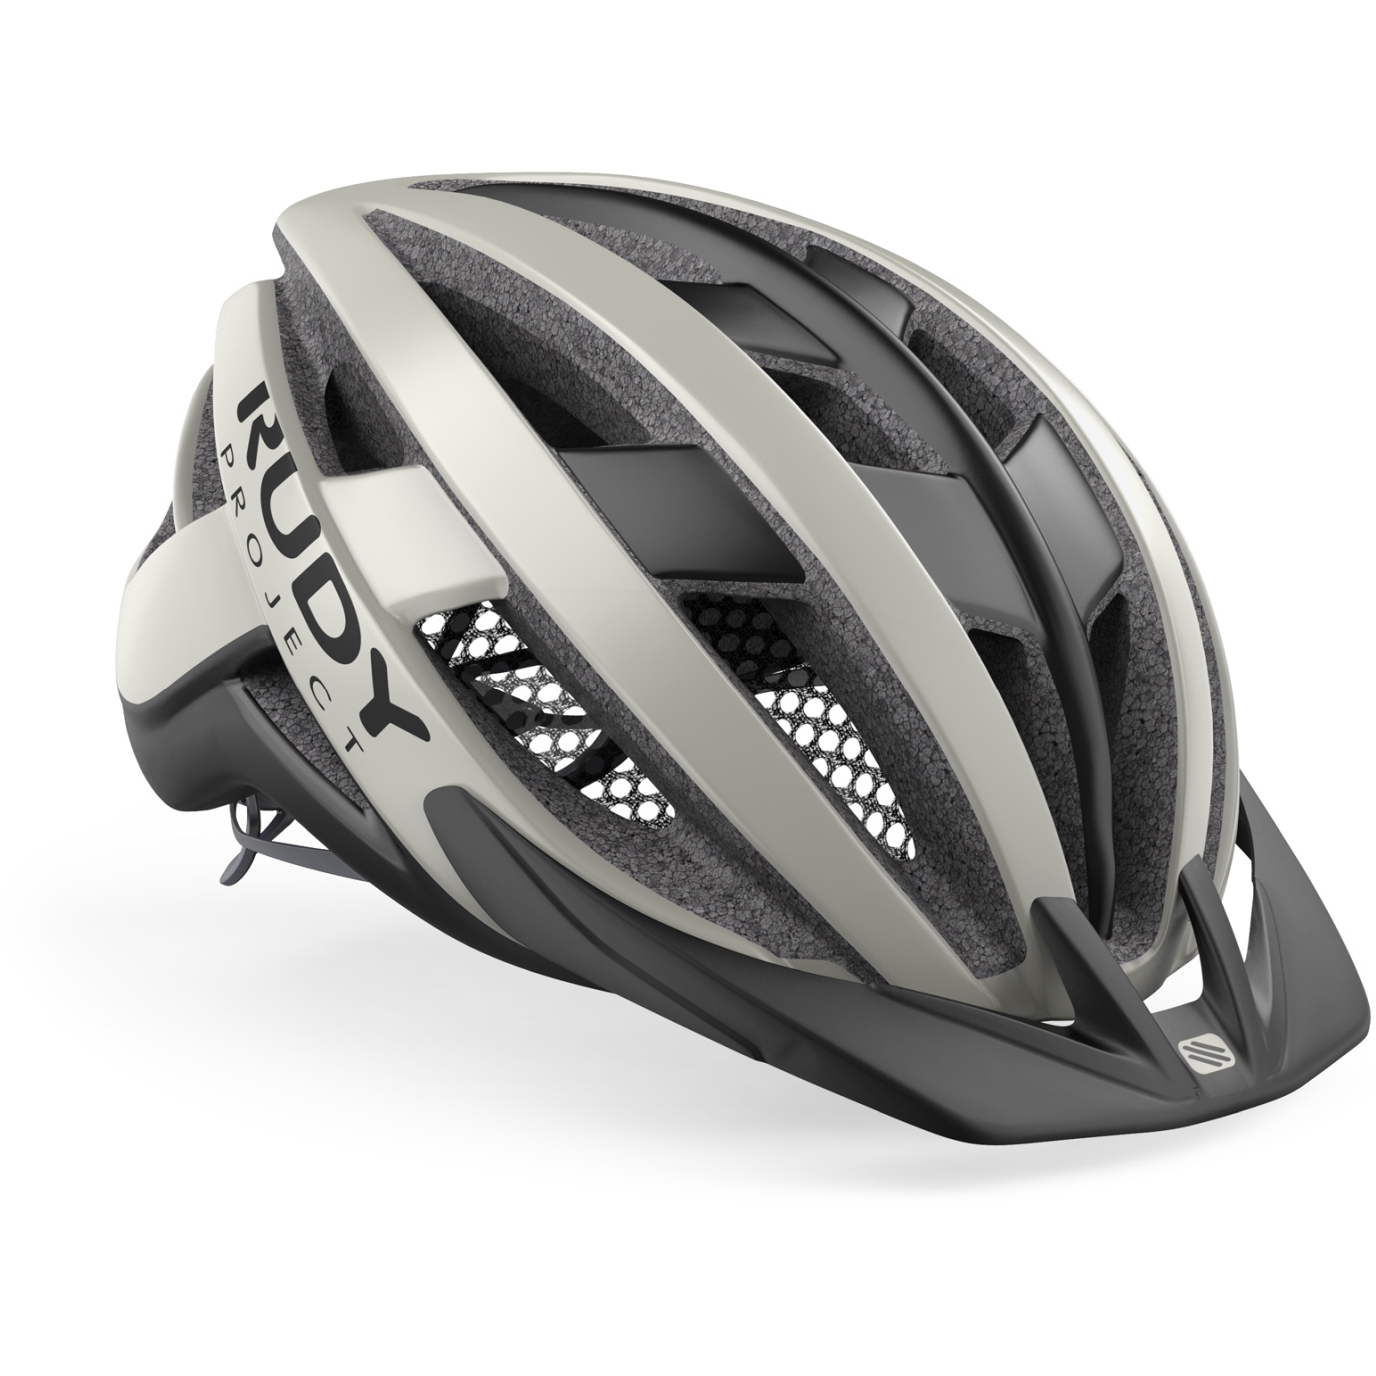 Productfoto van Rudy Project Venger Cross Helmet - Light Grey/Black (Matte)